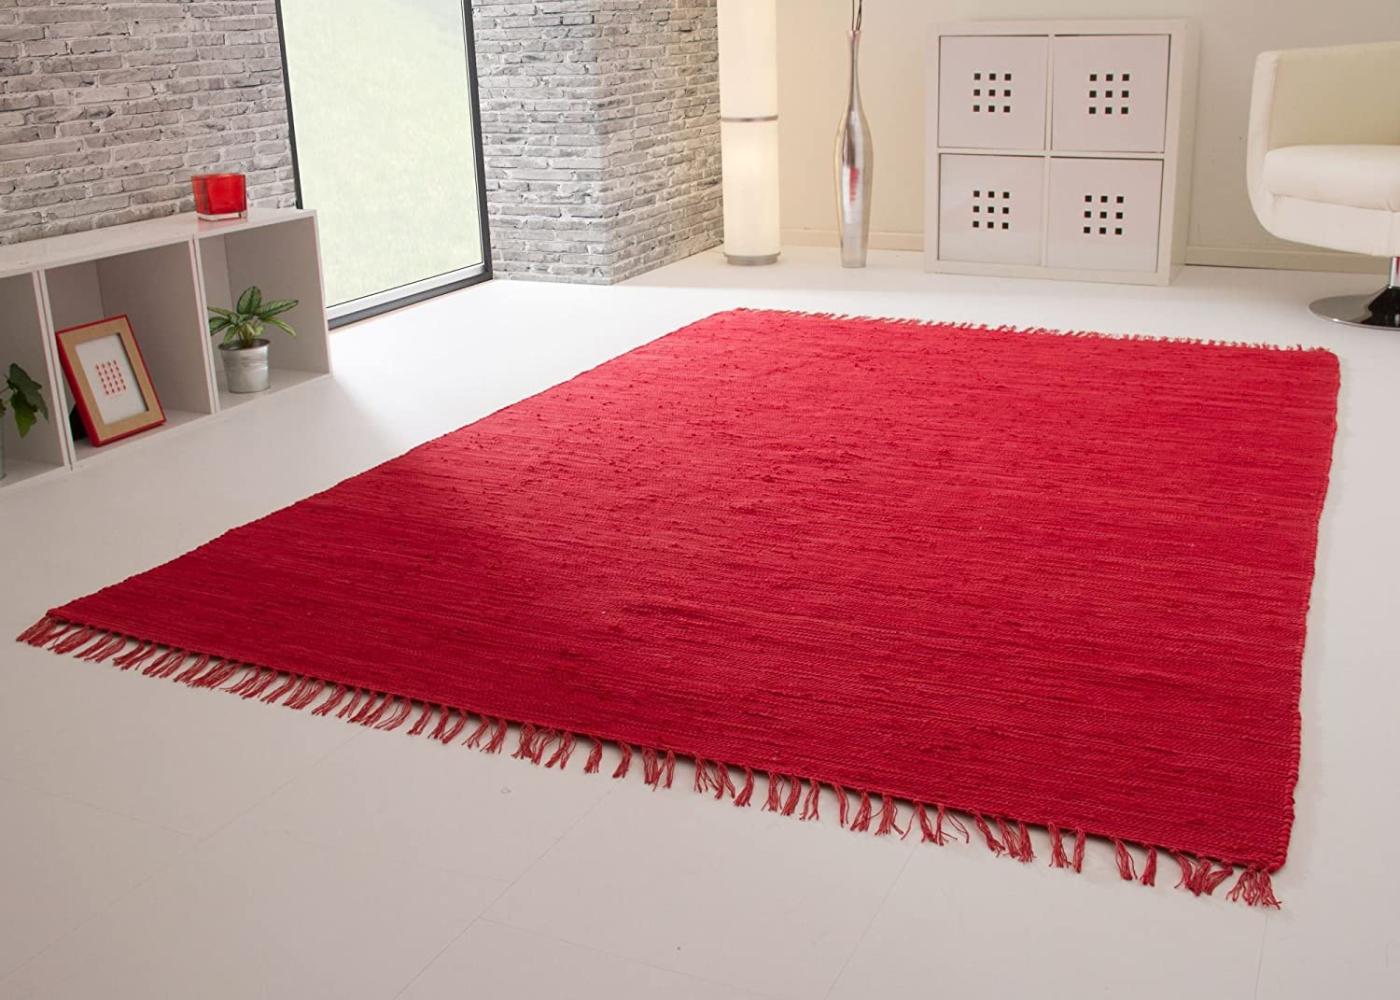 Handweb Teppich Indira, Farbe: rot, Größe: 160x230 cm Bild 1